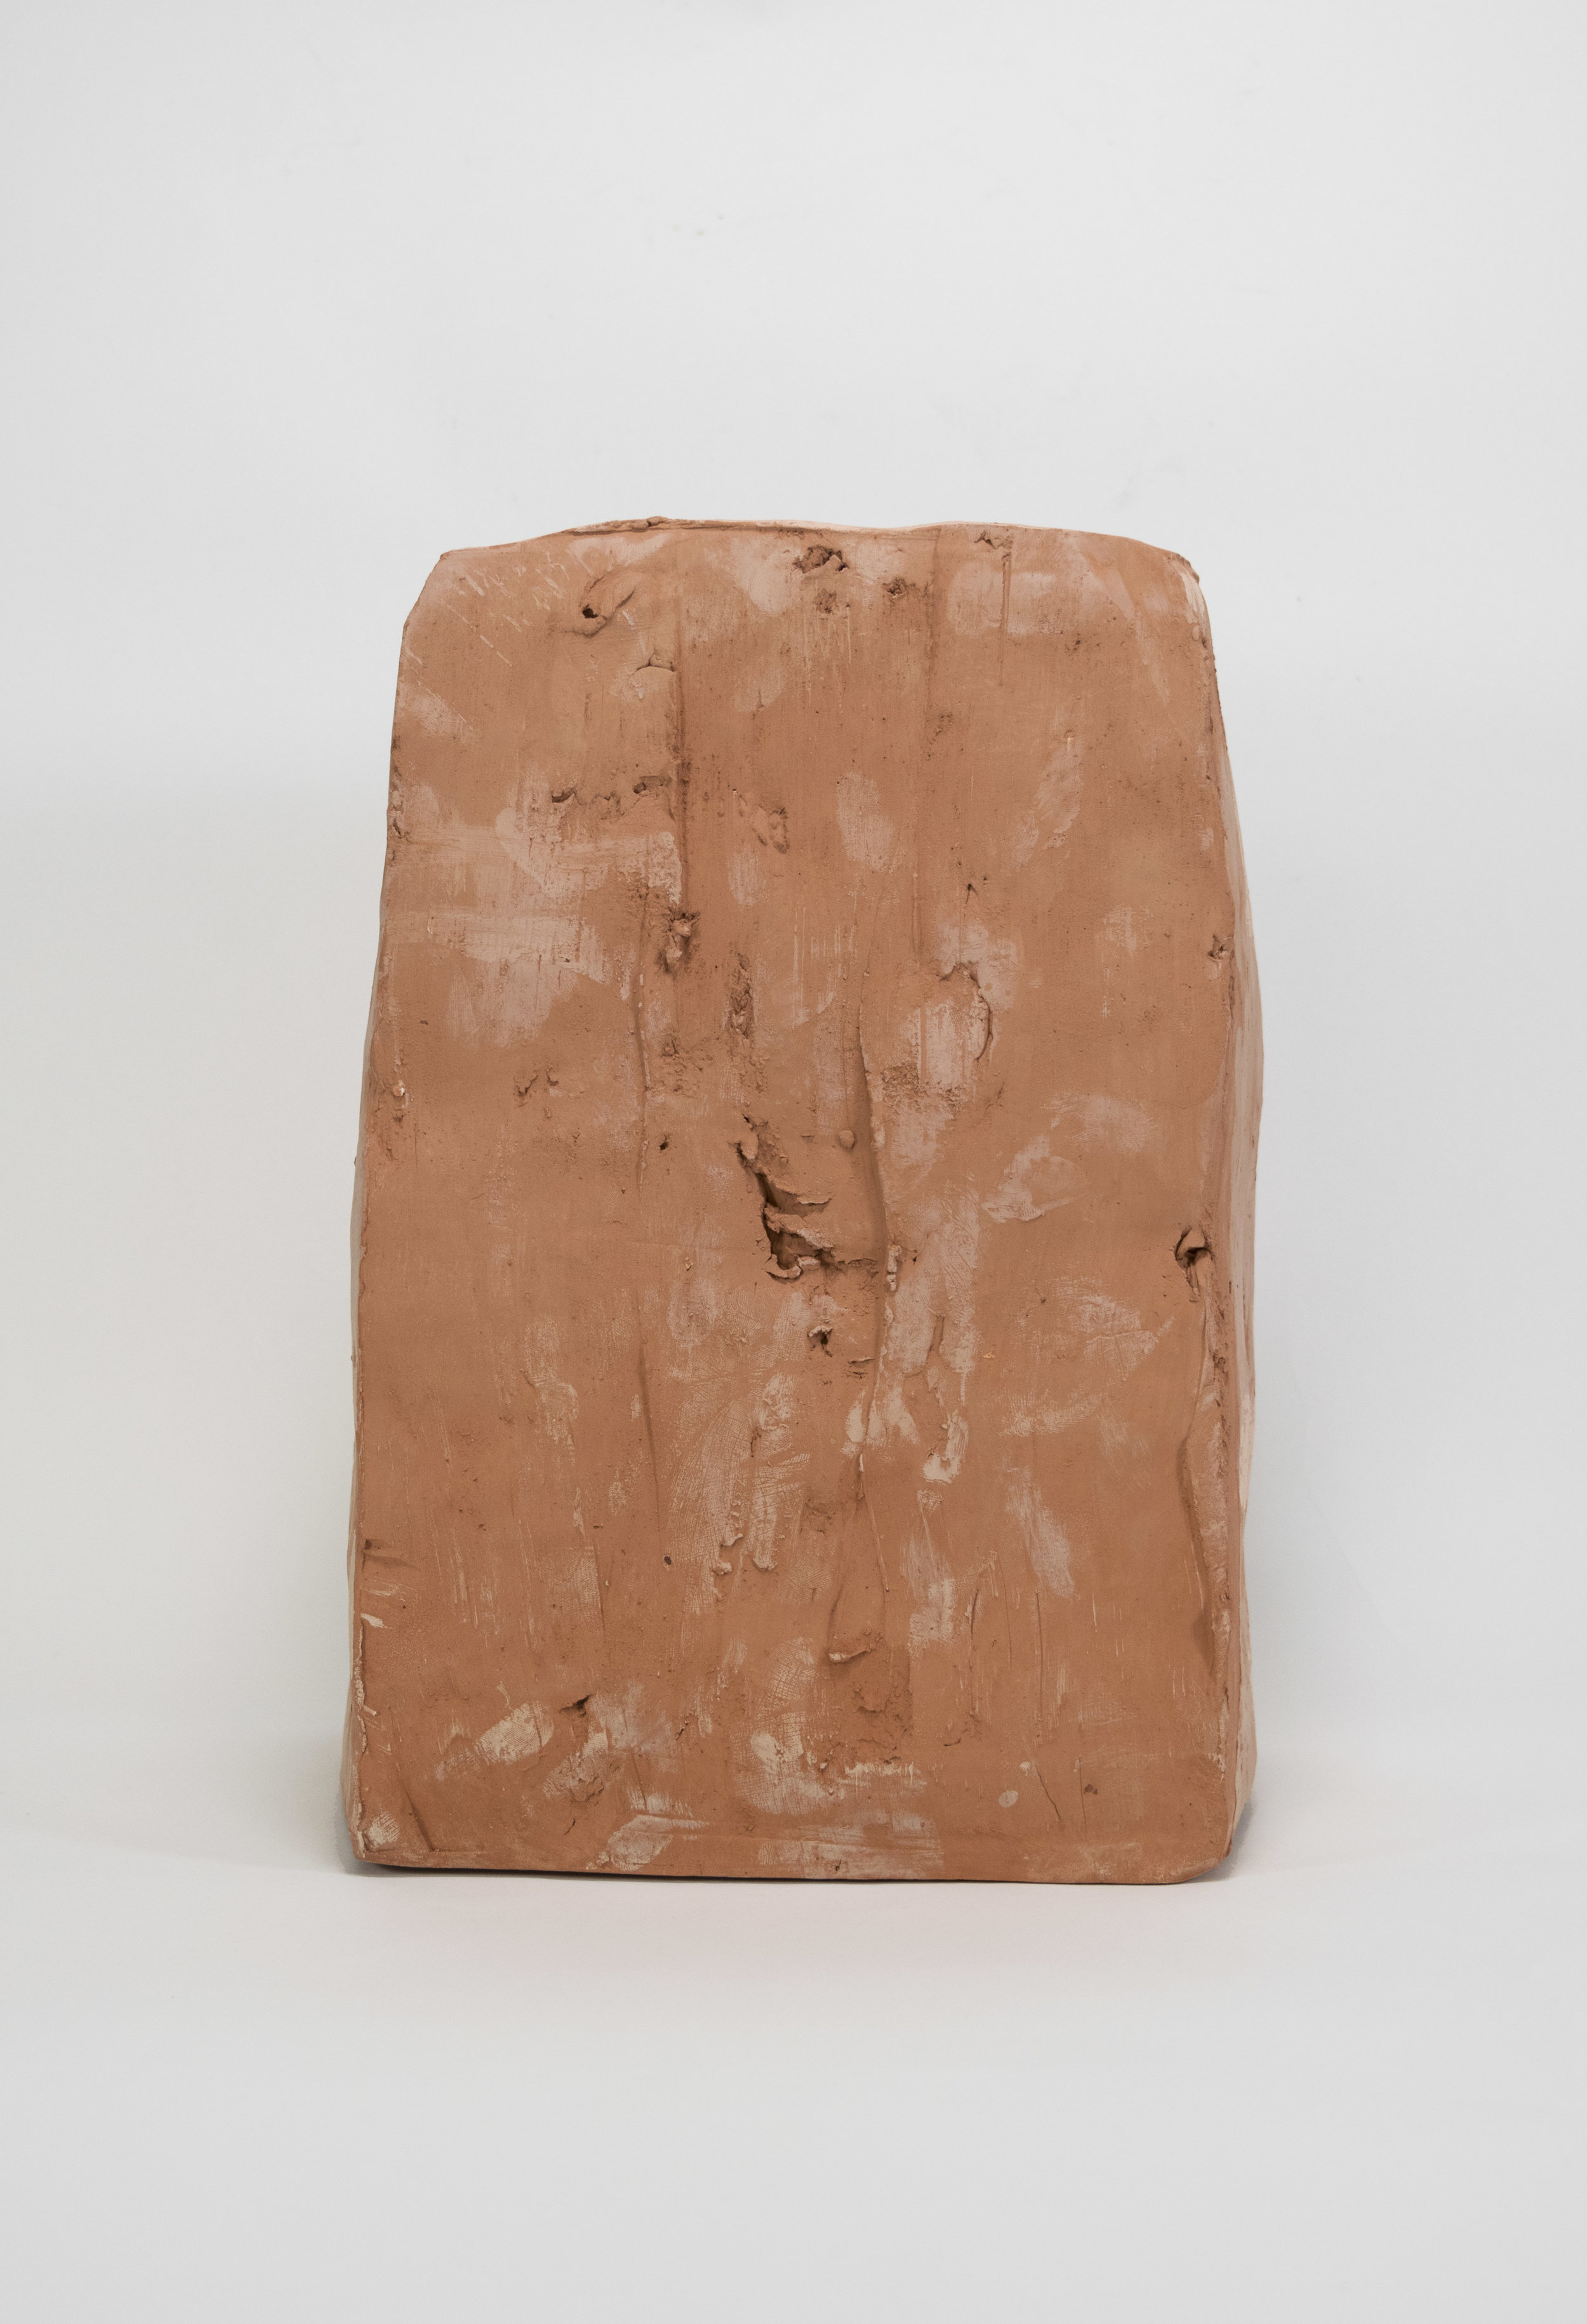   Ladrillo , ceramic, 12 x 8 x 5 inches, 2017. 